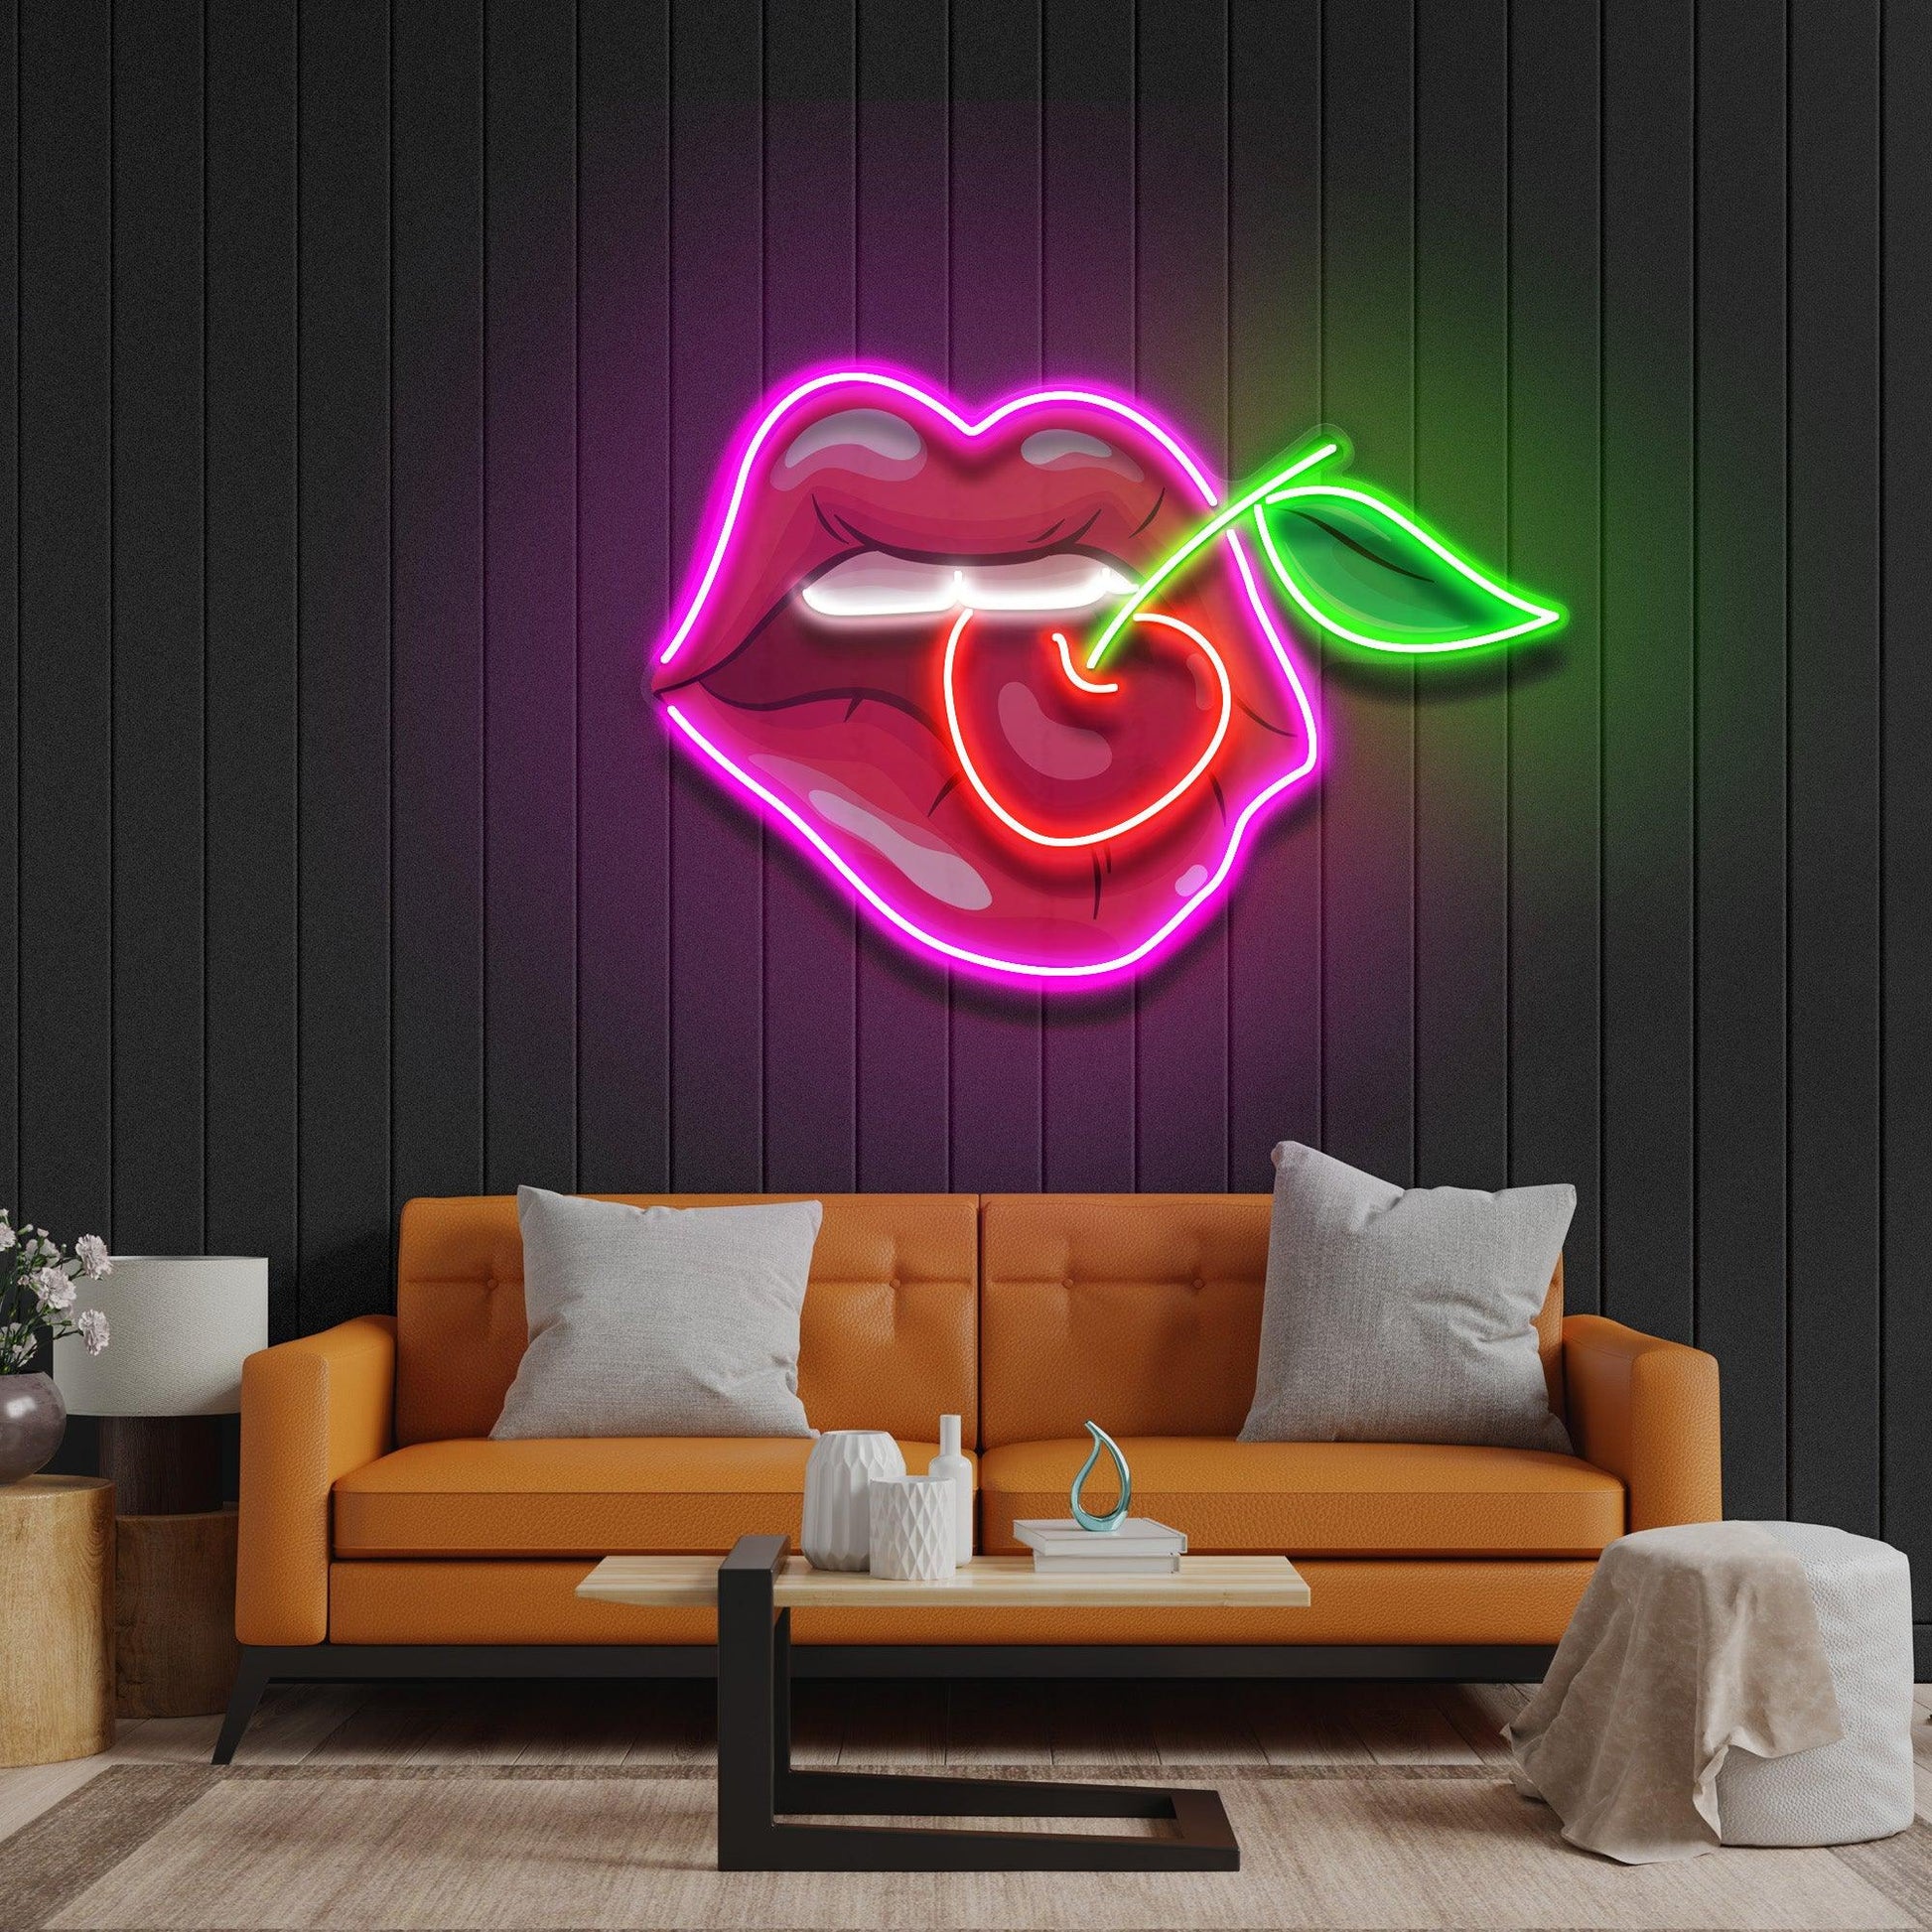 Sweet Cherry Led Neon Acrylic Artwork - Neonzastudio